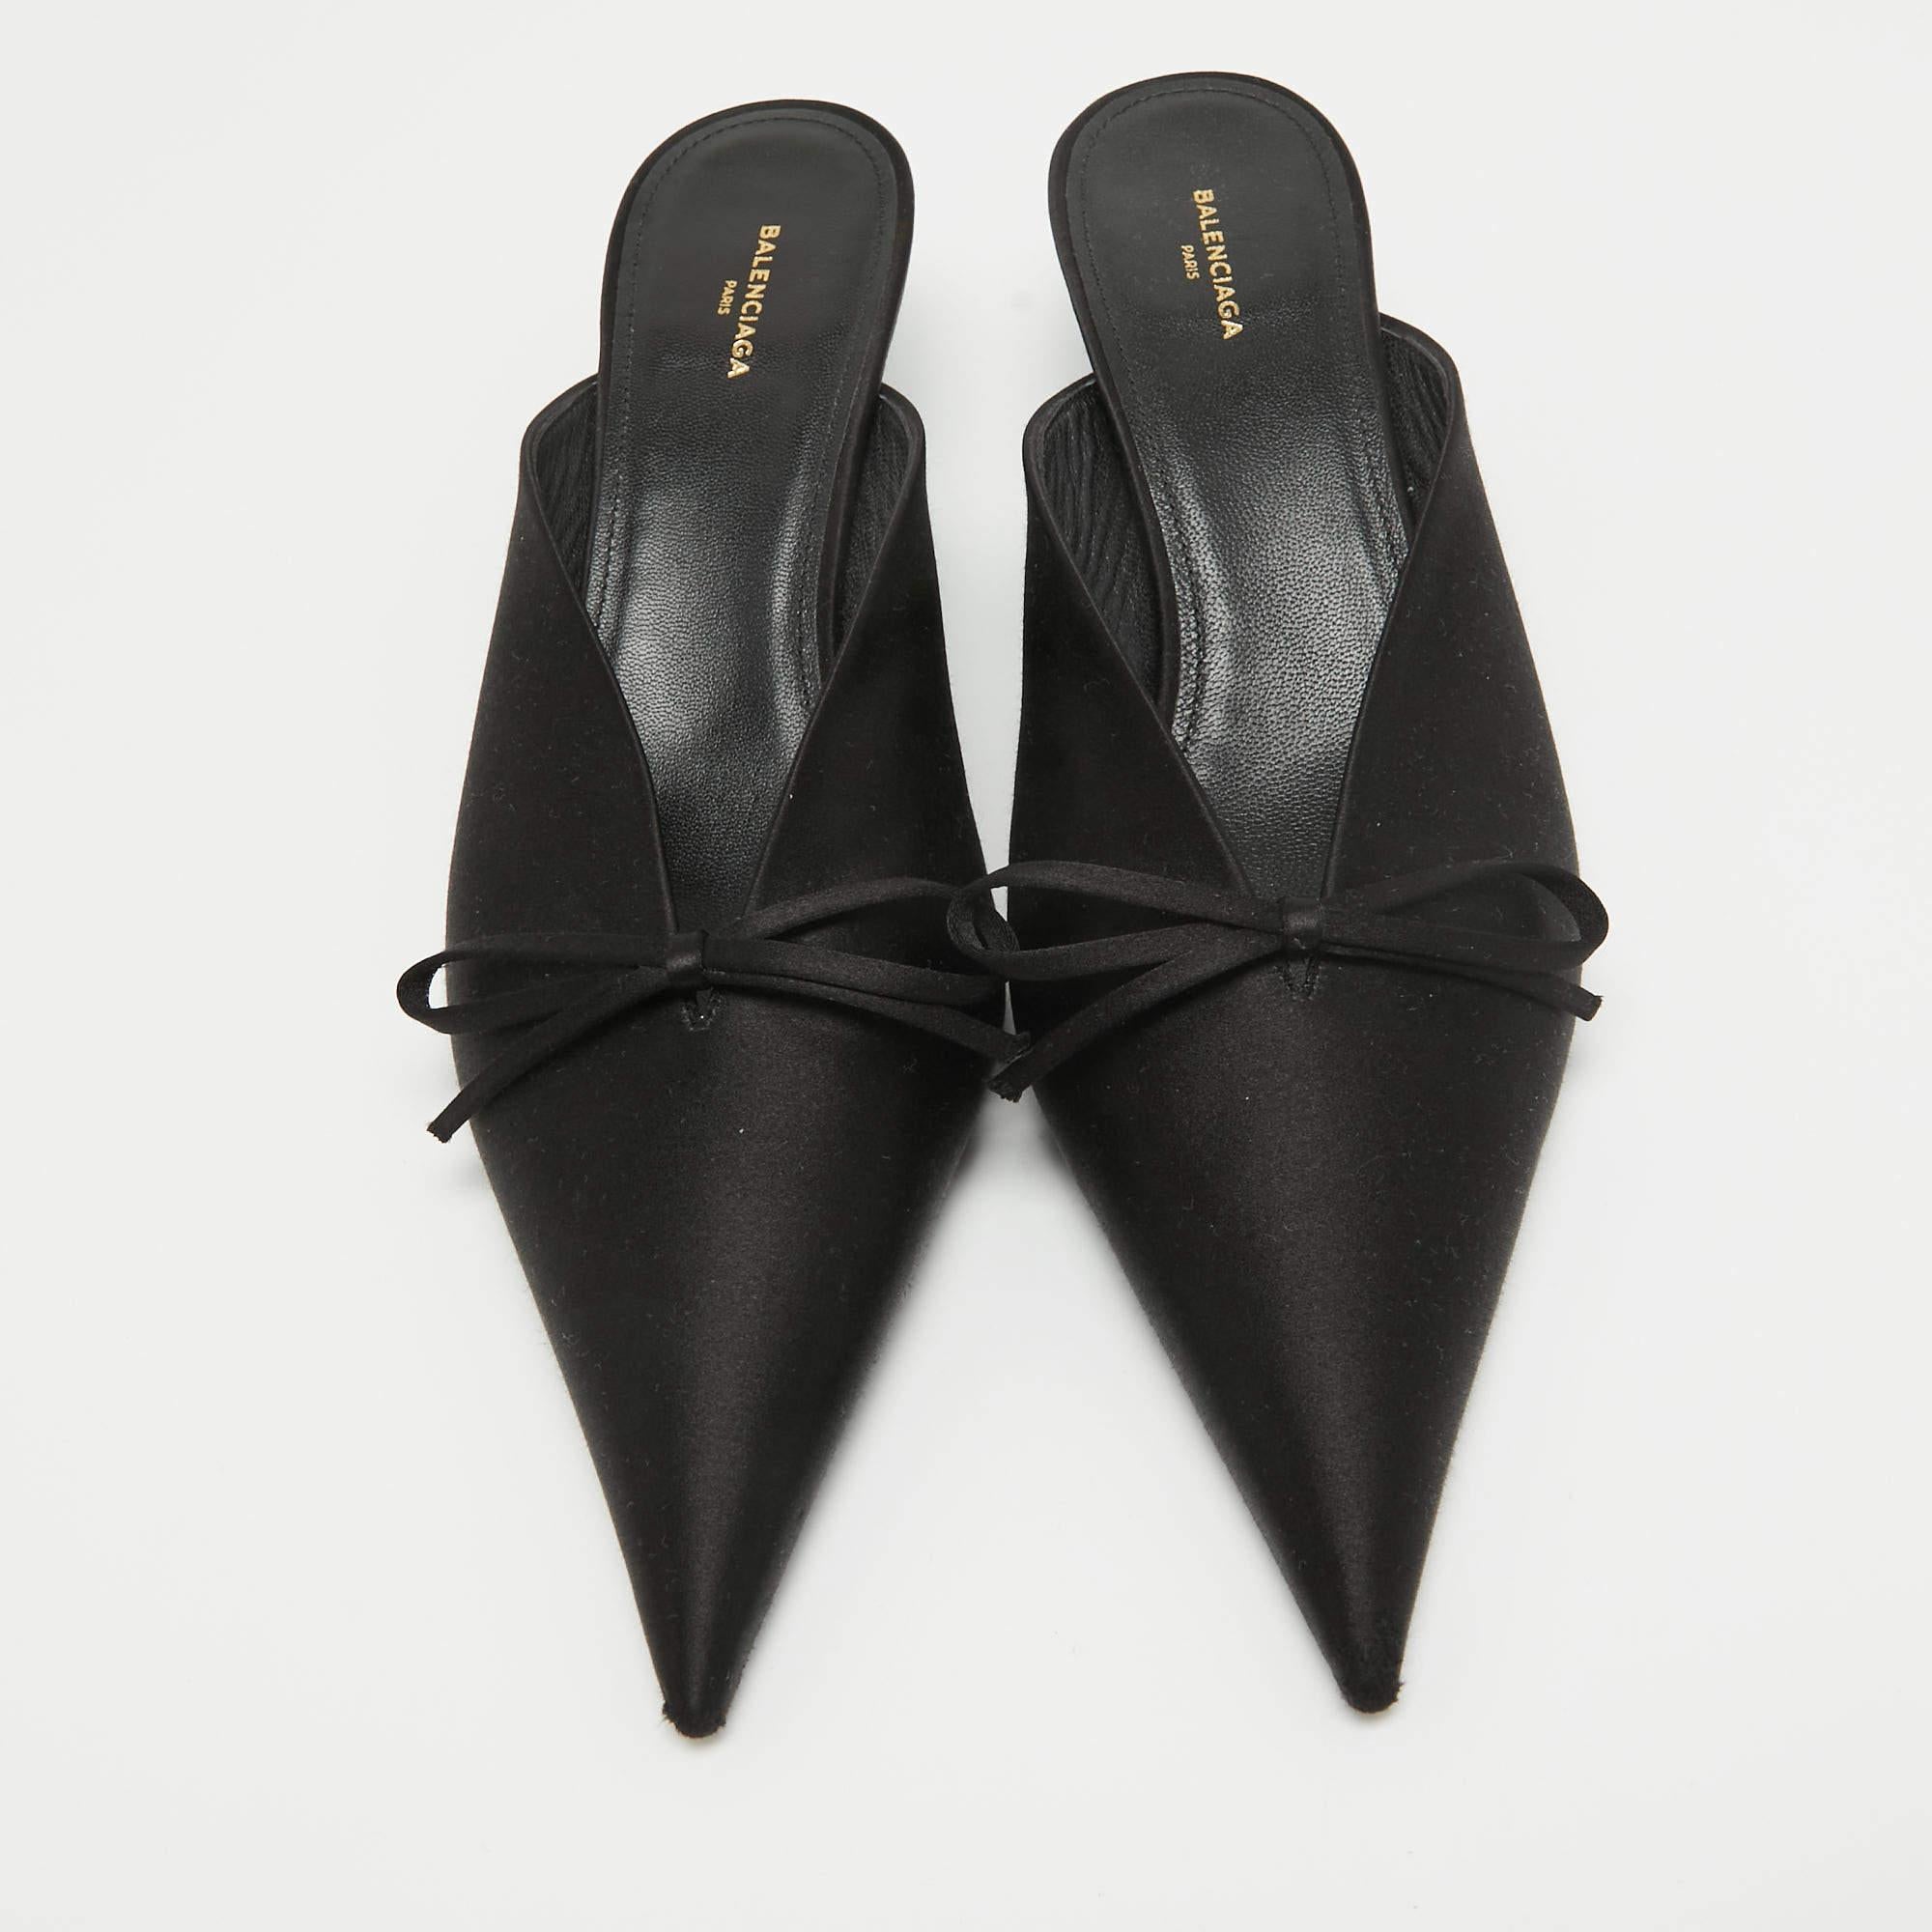 Complétez votre tenue soignée avec ces authentiques kitten heels de Balenciaga. Intemporelles et élégantes, elles bénéficient d'une construction étonnante pour une qualité durable et une tenue confortable.

Comprend
Sac à poussière original